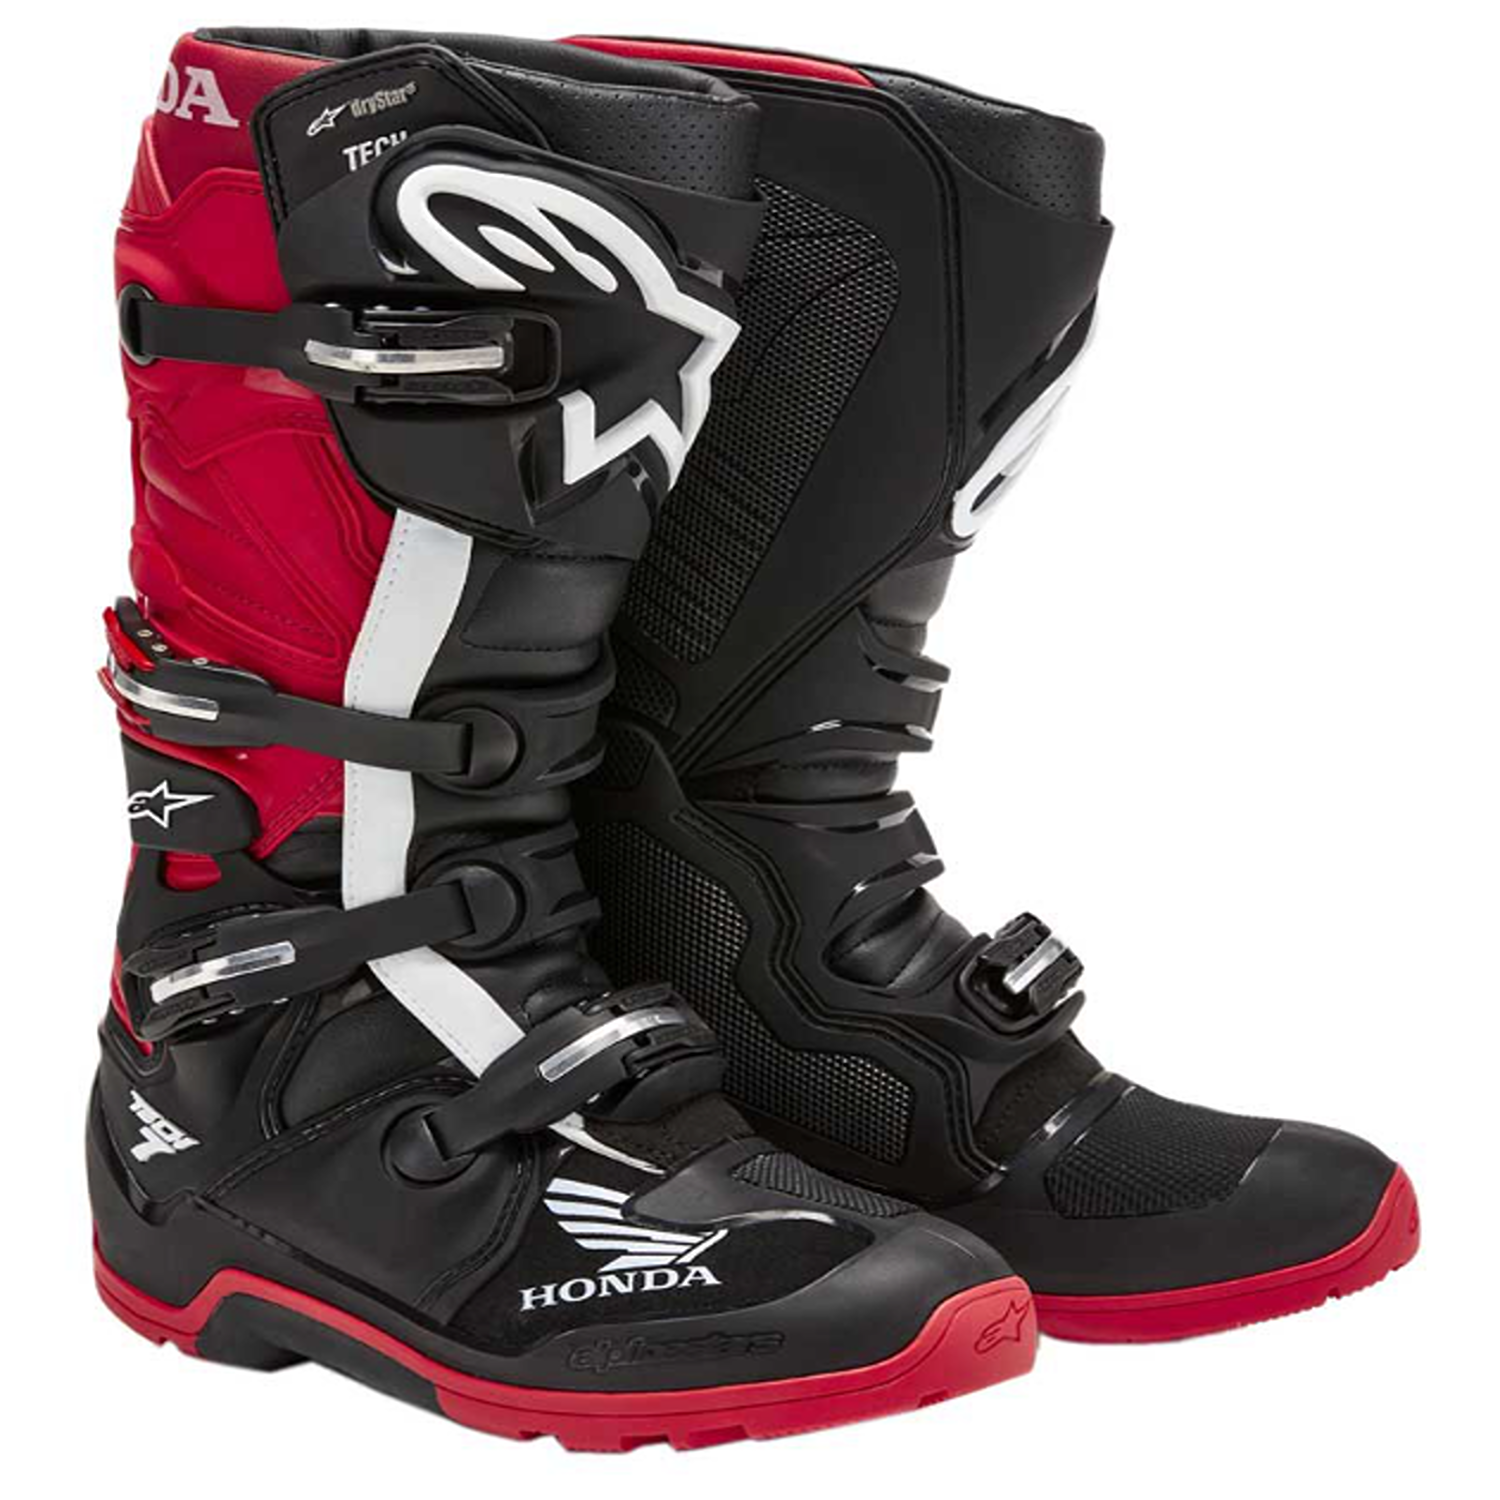 Image of Alpinestars Honda Tech 7 Enduro Drystar Boots Black Bright Red Größe US 13